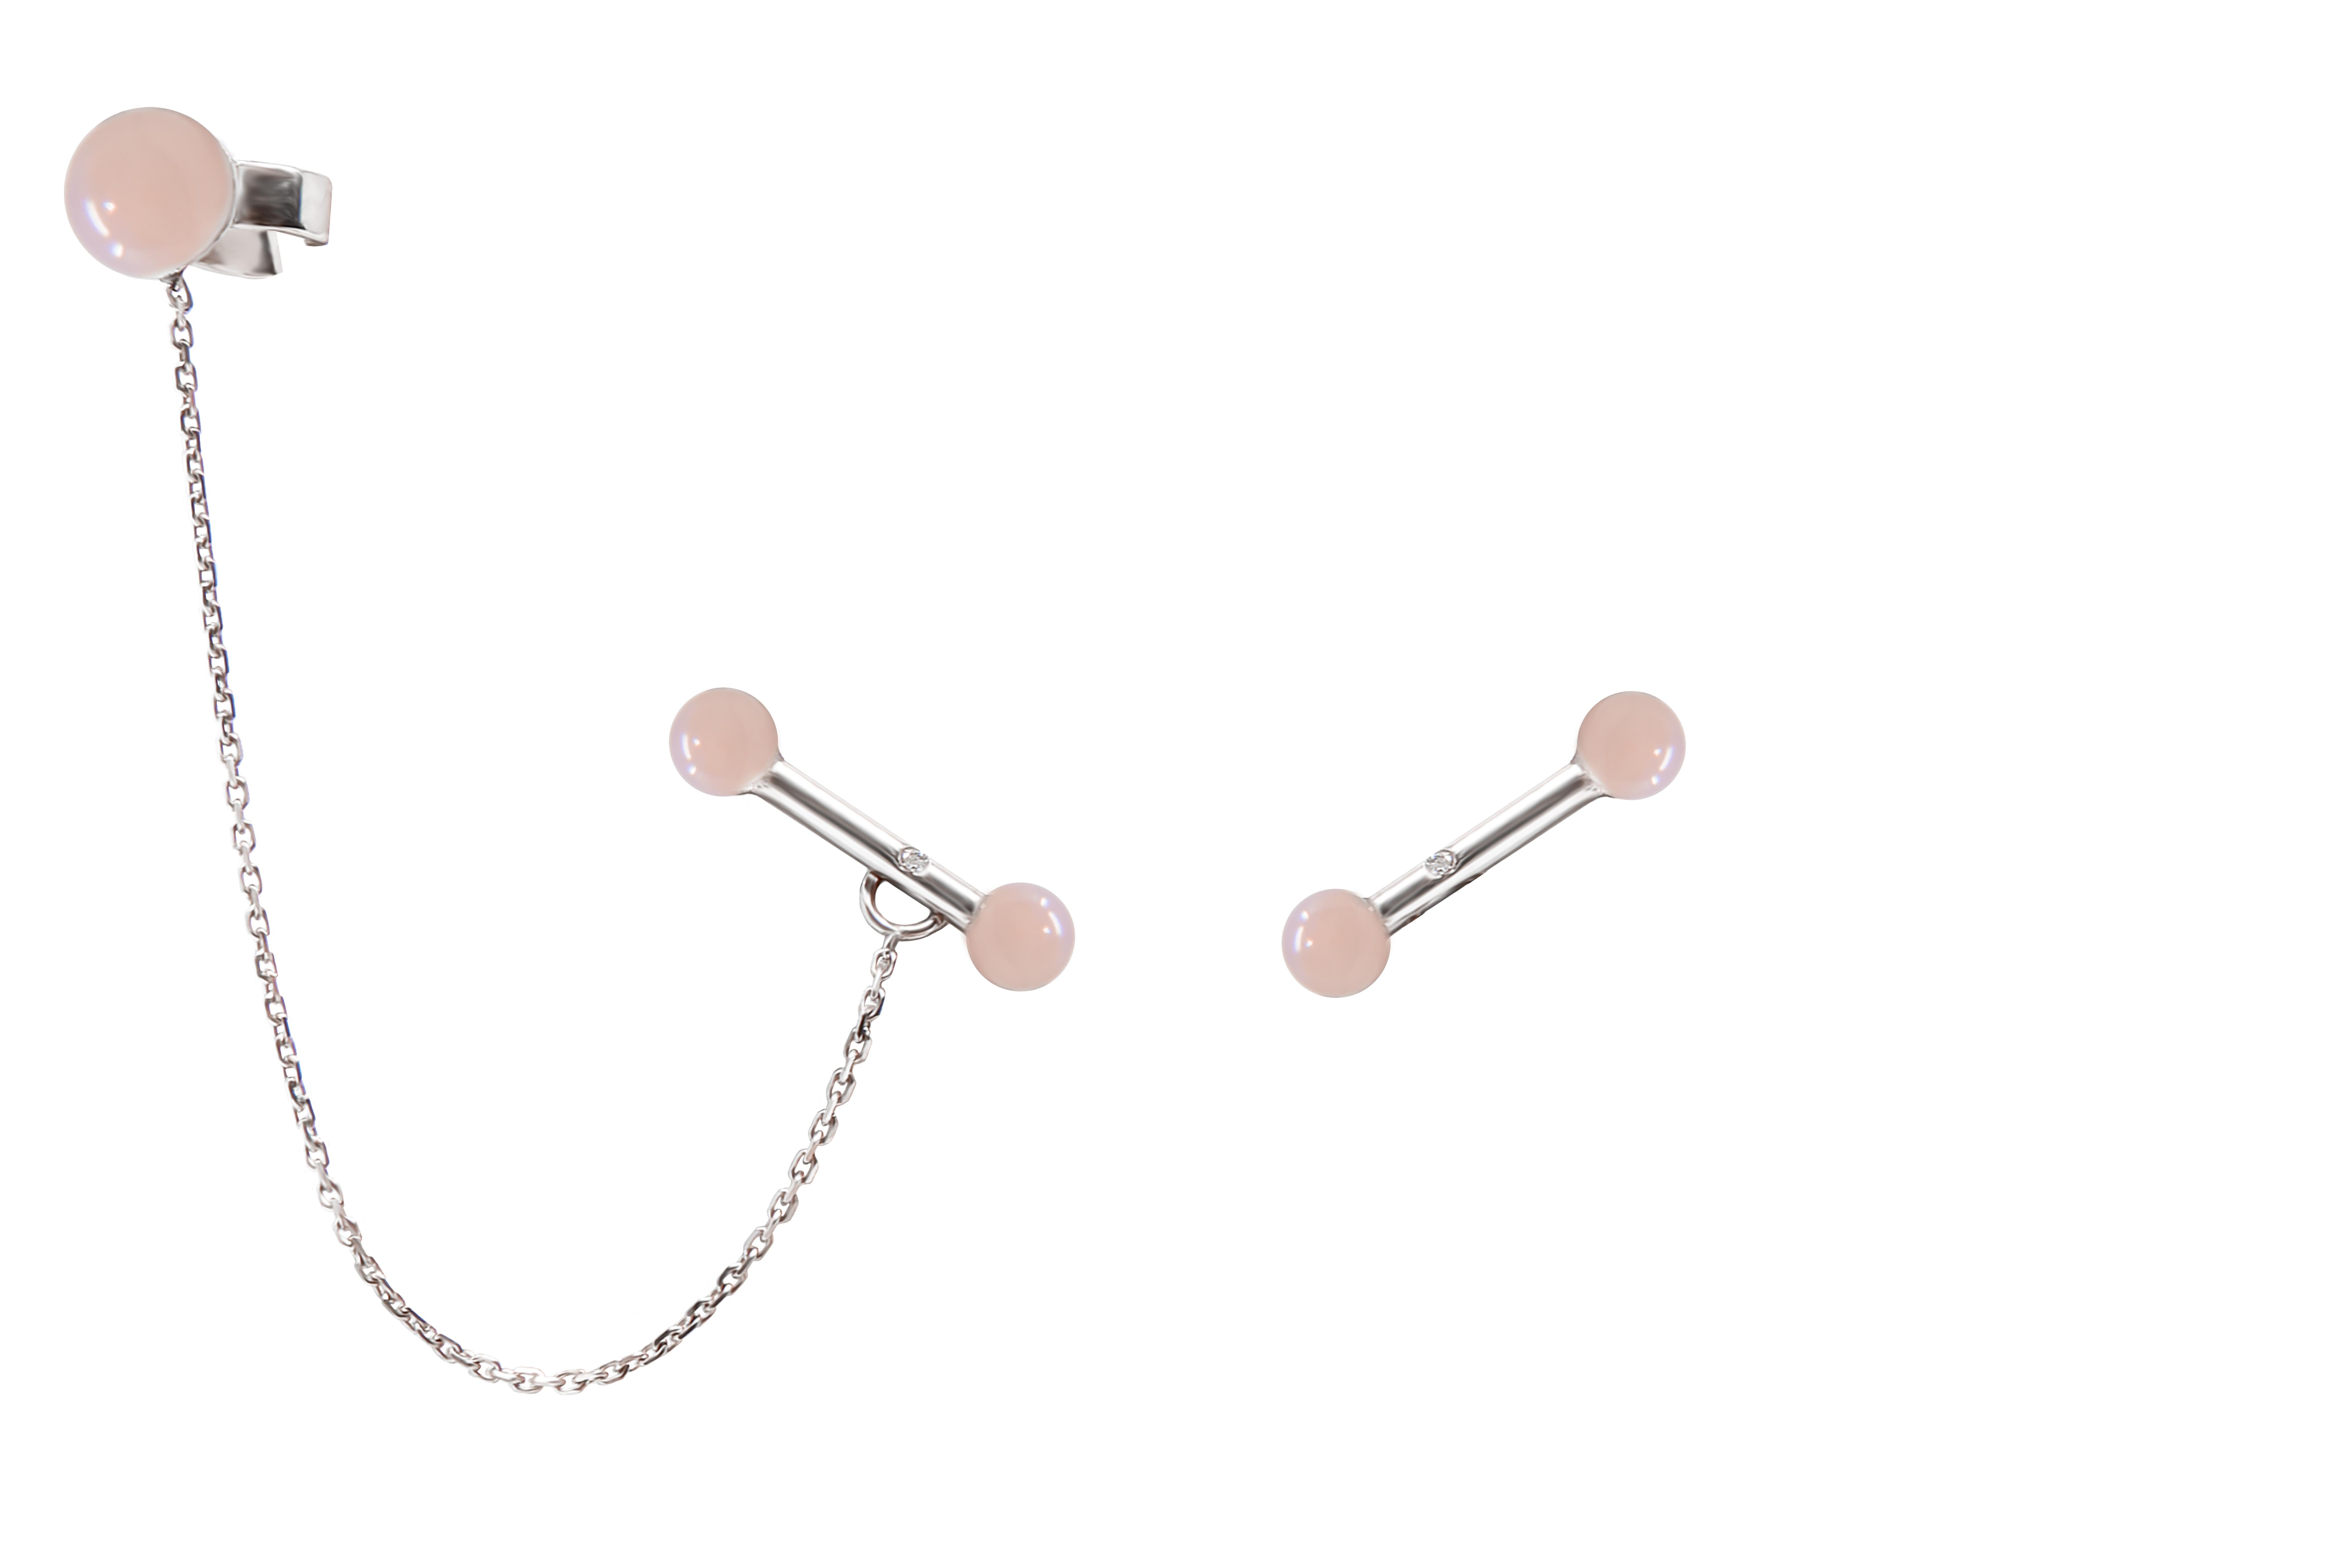 Boucles d'oreilles en or blanc 18 carats avec diamant, opale rose et une manchette en opale rose enchaînée.  Les boucles d'oreilles peuvent être portées avec ou sans la manchette en perles Pink Opal.
Pierres sculptées à la main à partir d'un design